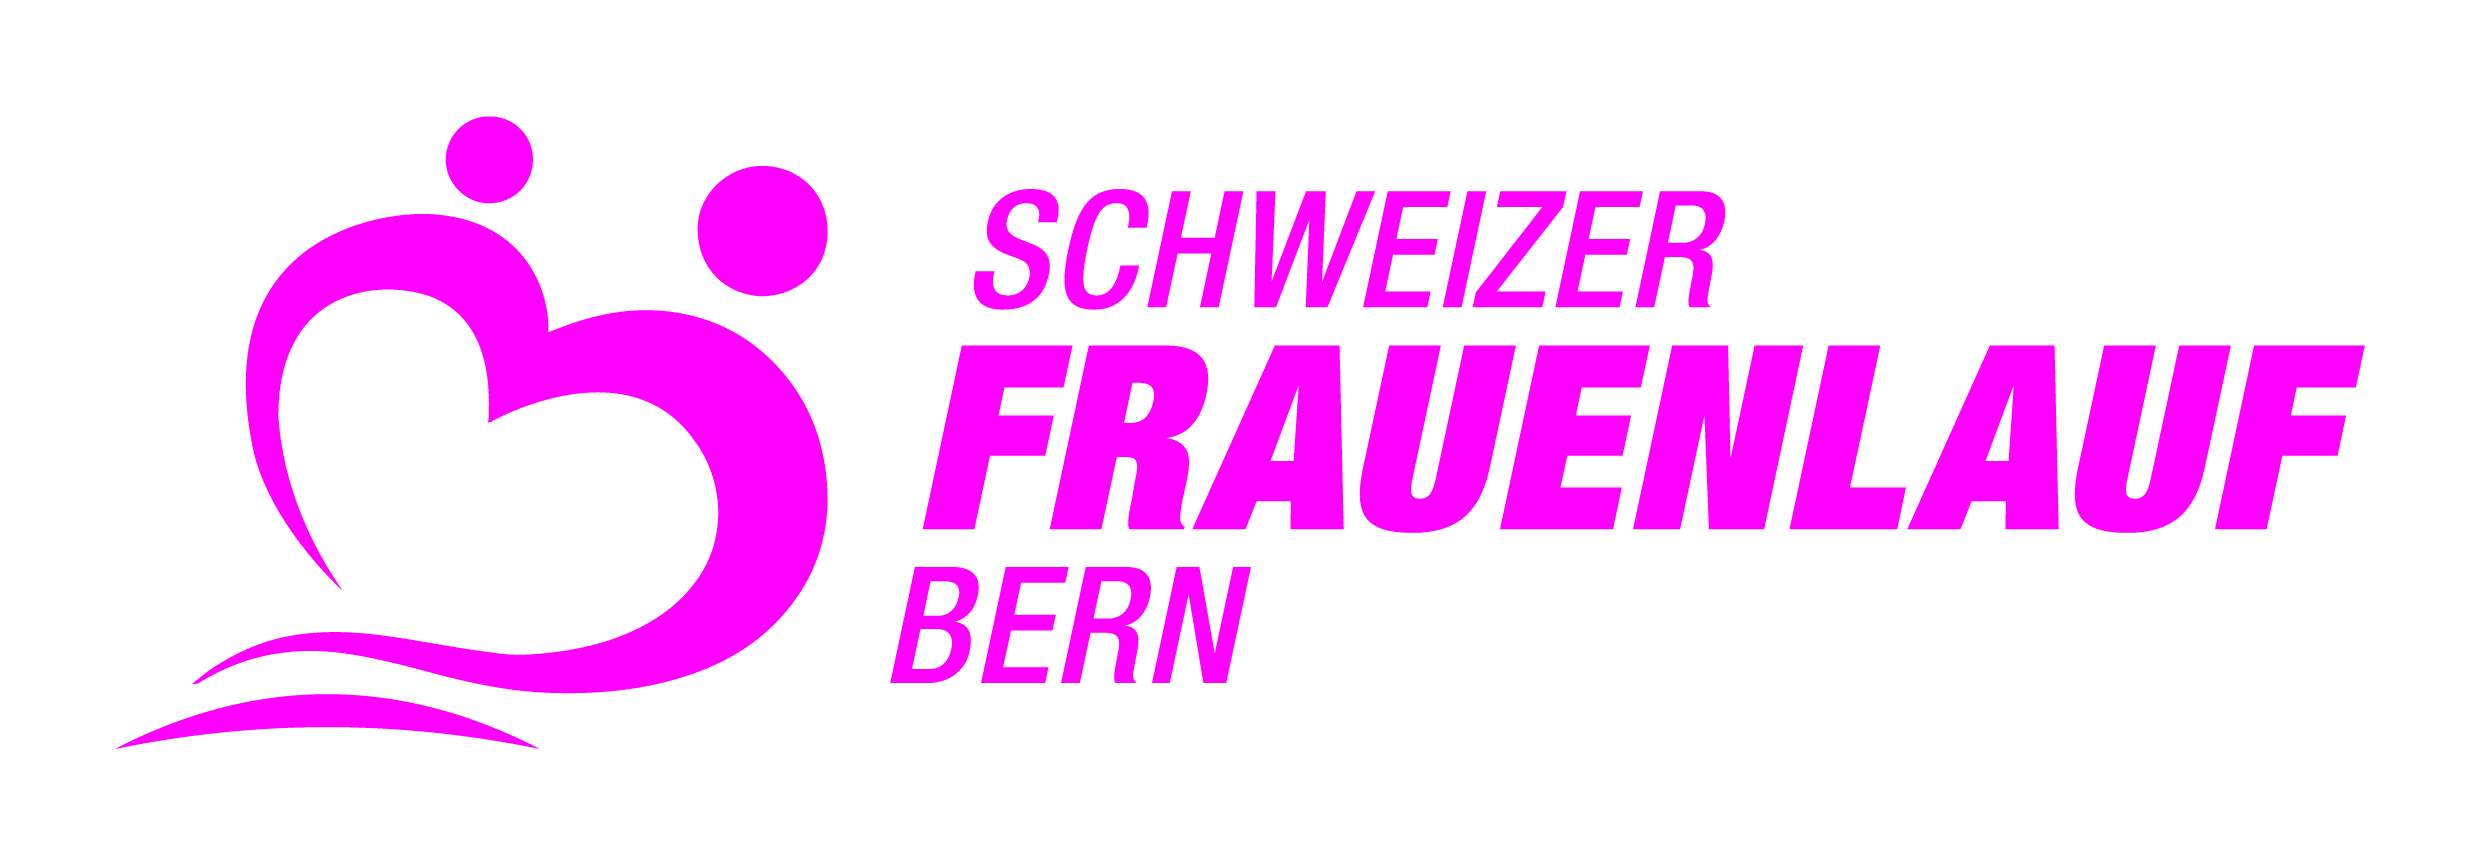 37. Schweizer Frauenlauf Bern